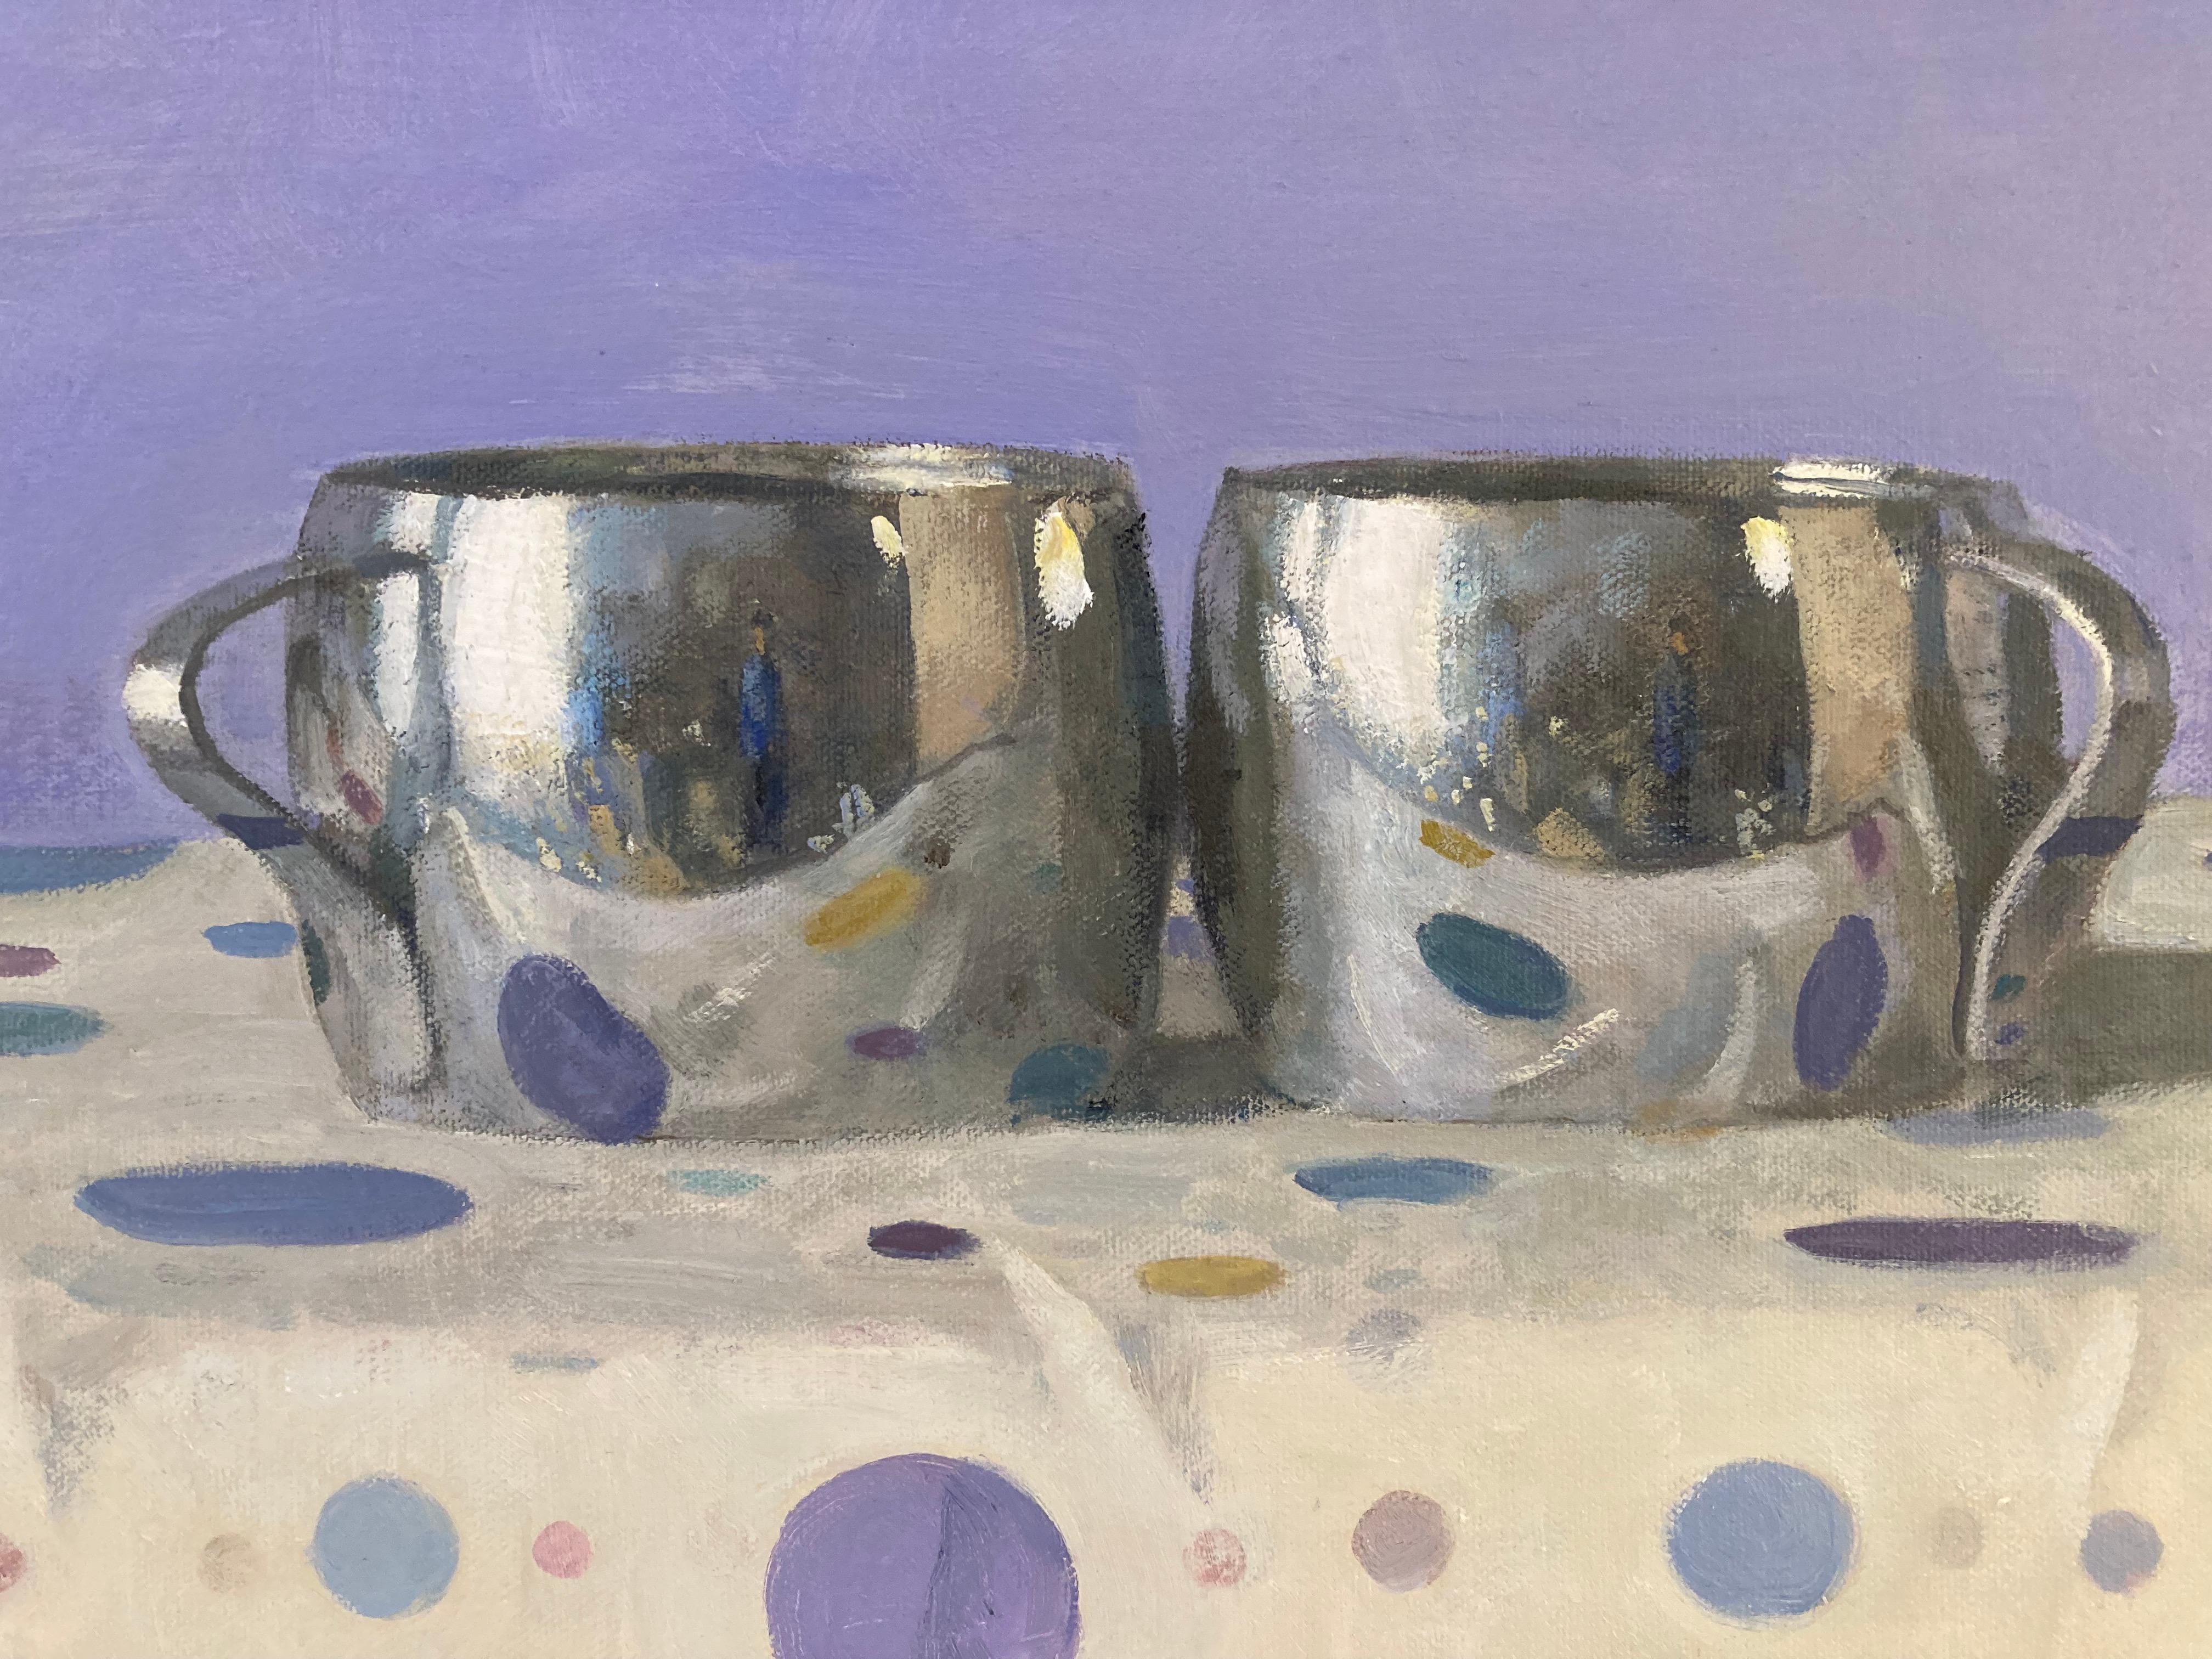 « Deux tasses en argent, reflets de portraits à pois, lavande, jaune, bleue, rose » - Argent Still-Life Painting par Olga Antonova